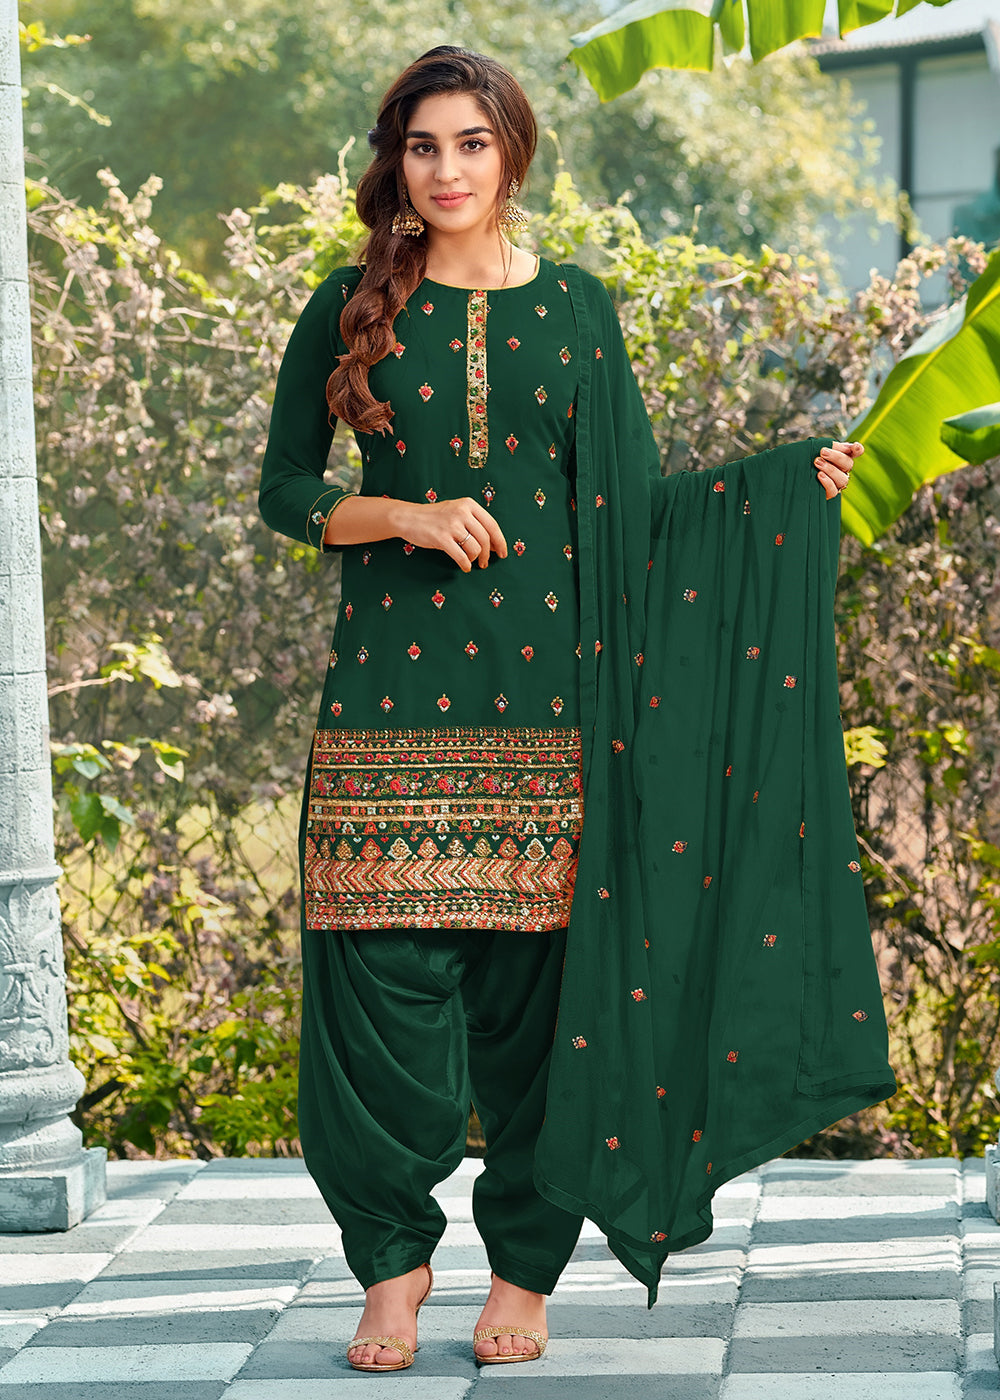 Punjabi Suit Online Shopping India | Indian Punjabi Suits